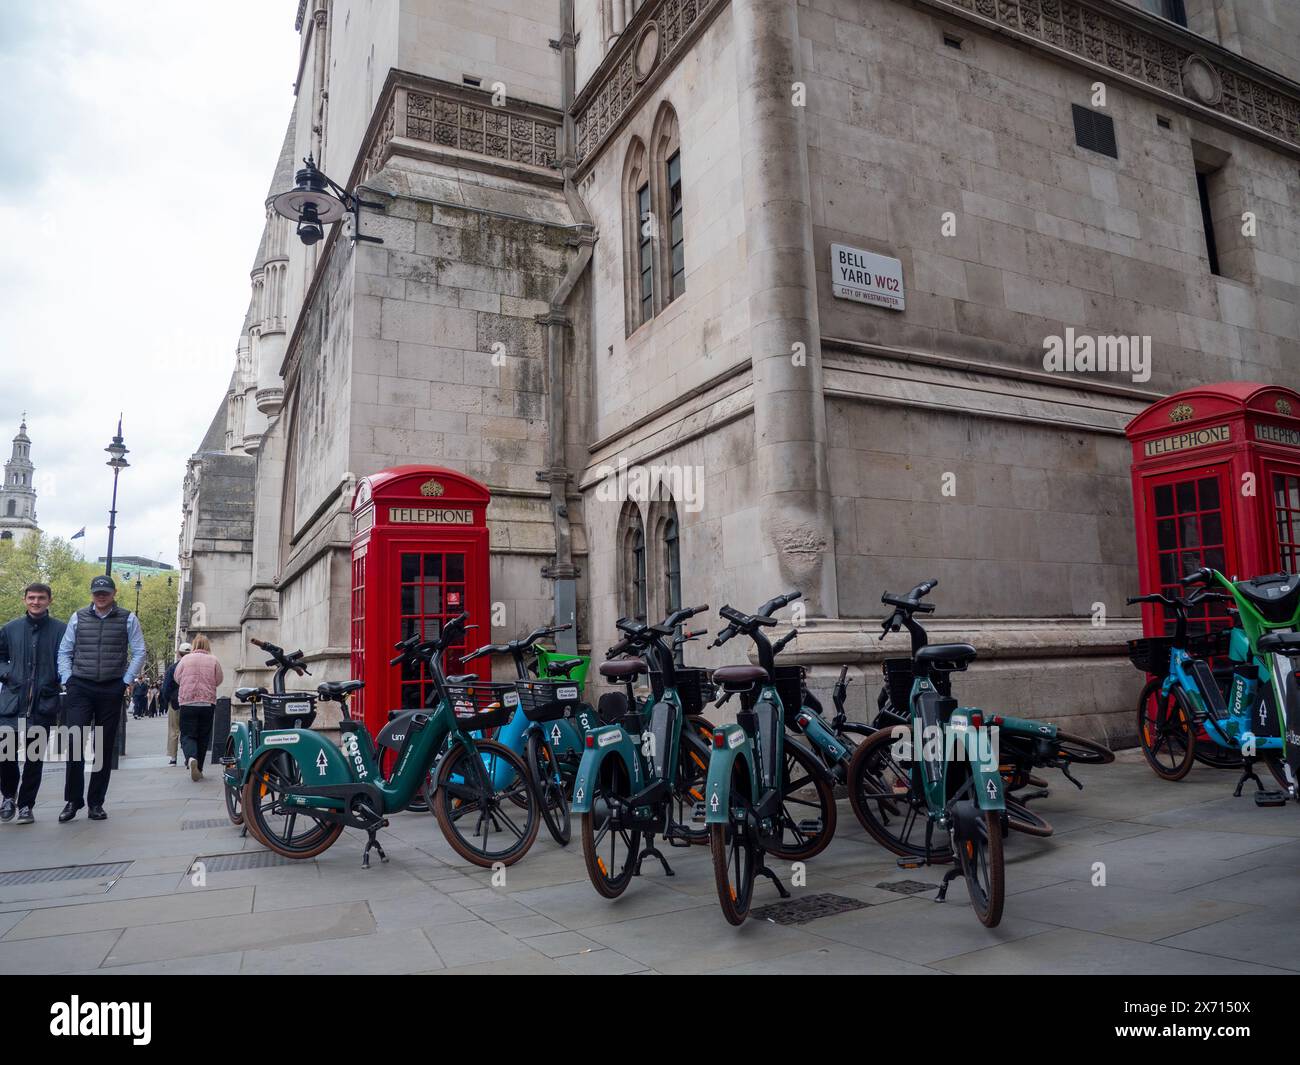 Bell Yard centre de Londres avec des rangées de vélos de location à louer, et boîte de téléphone rouge en arrière-plan Banque D'Images